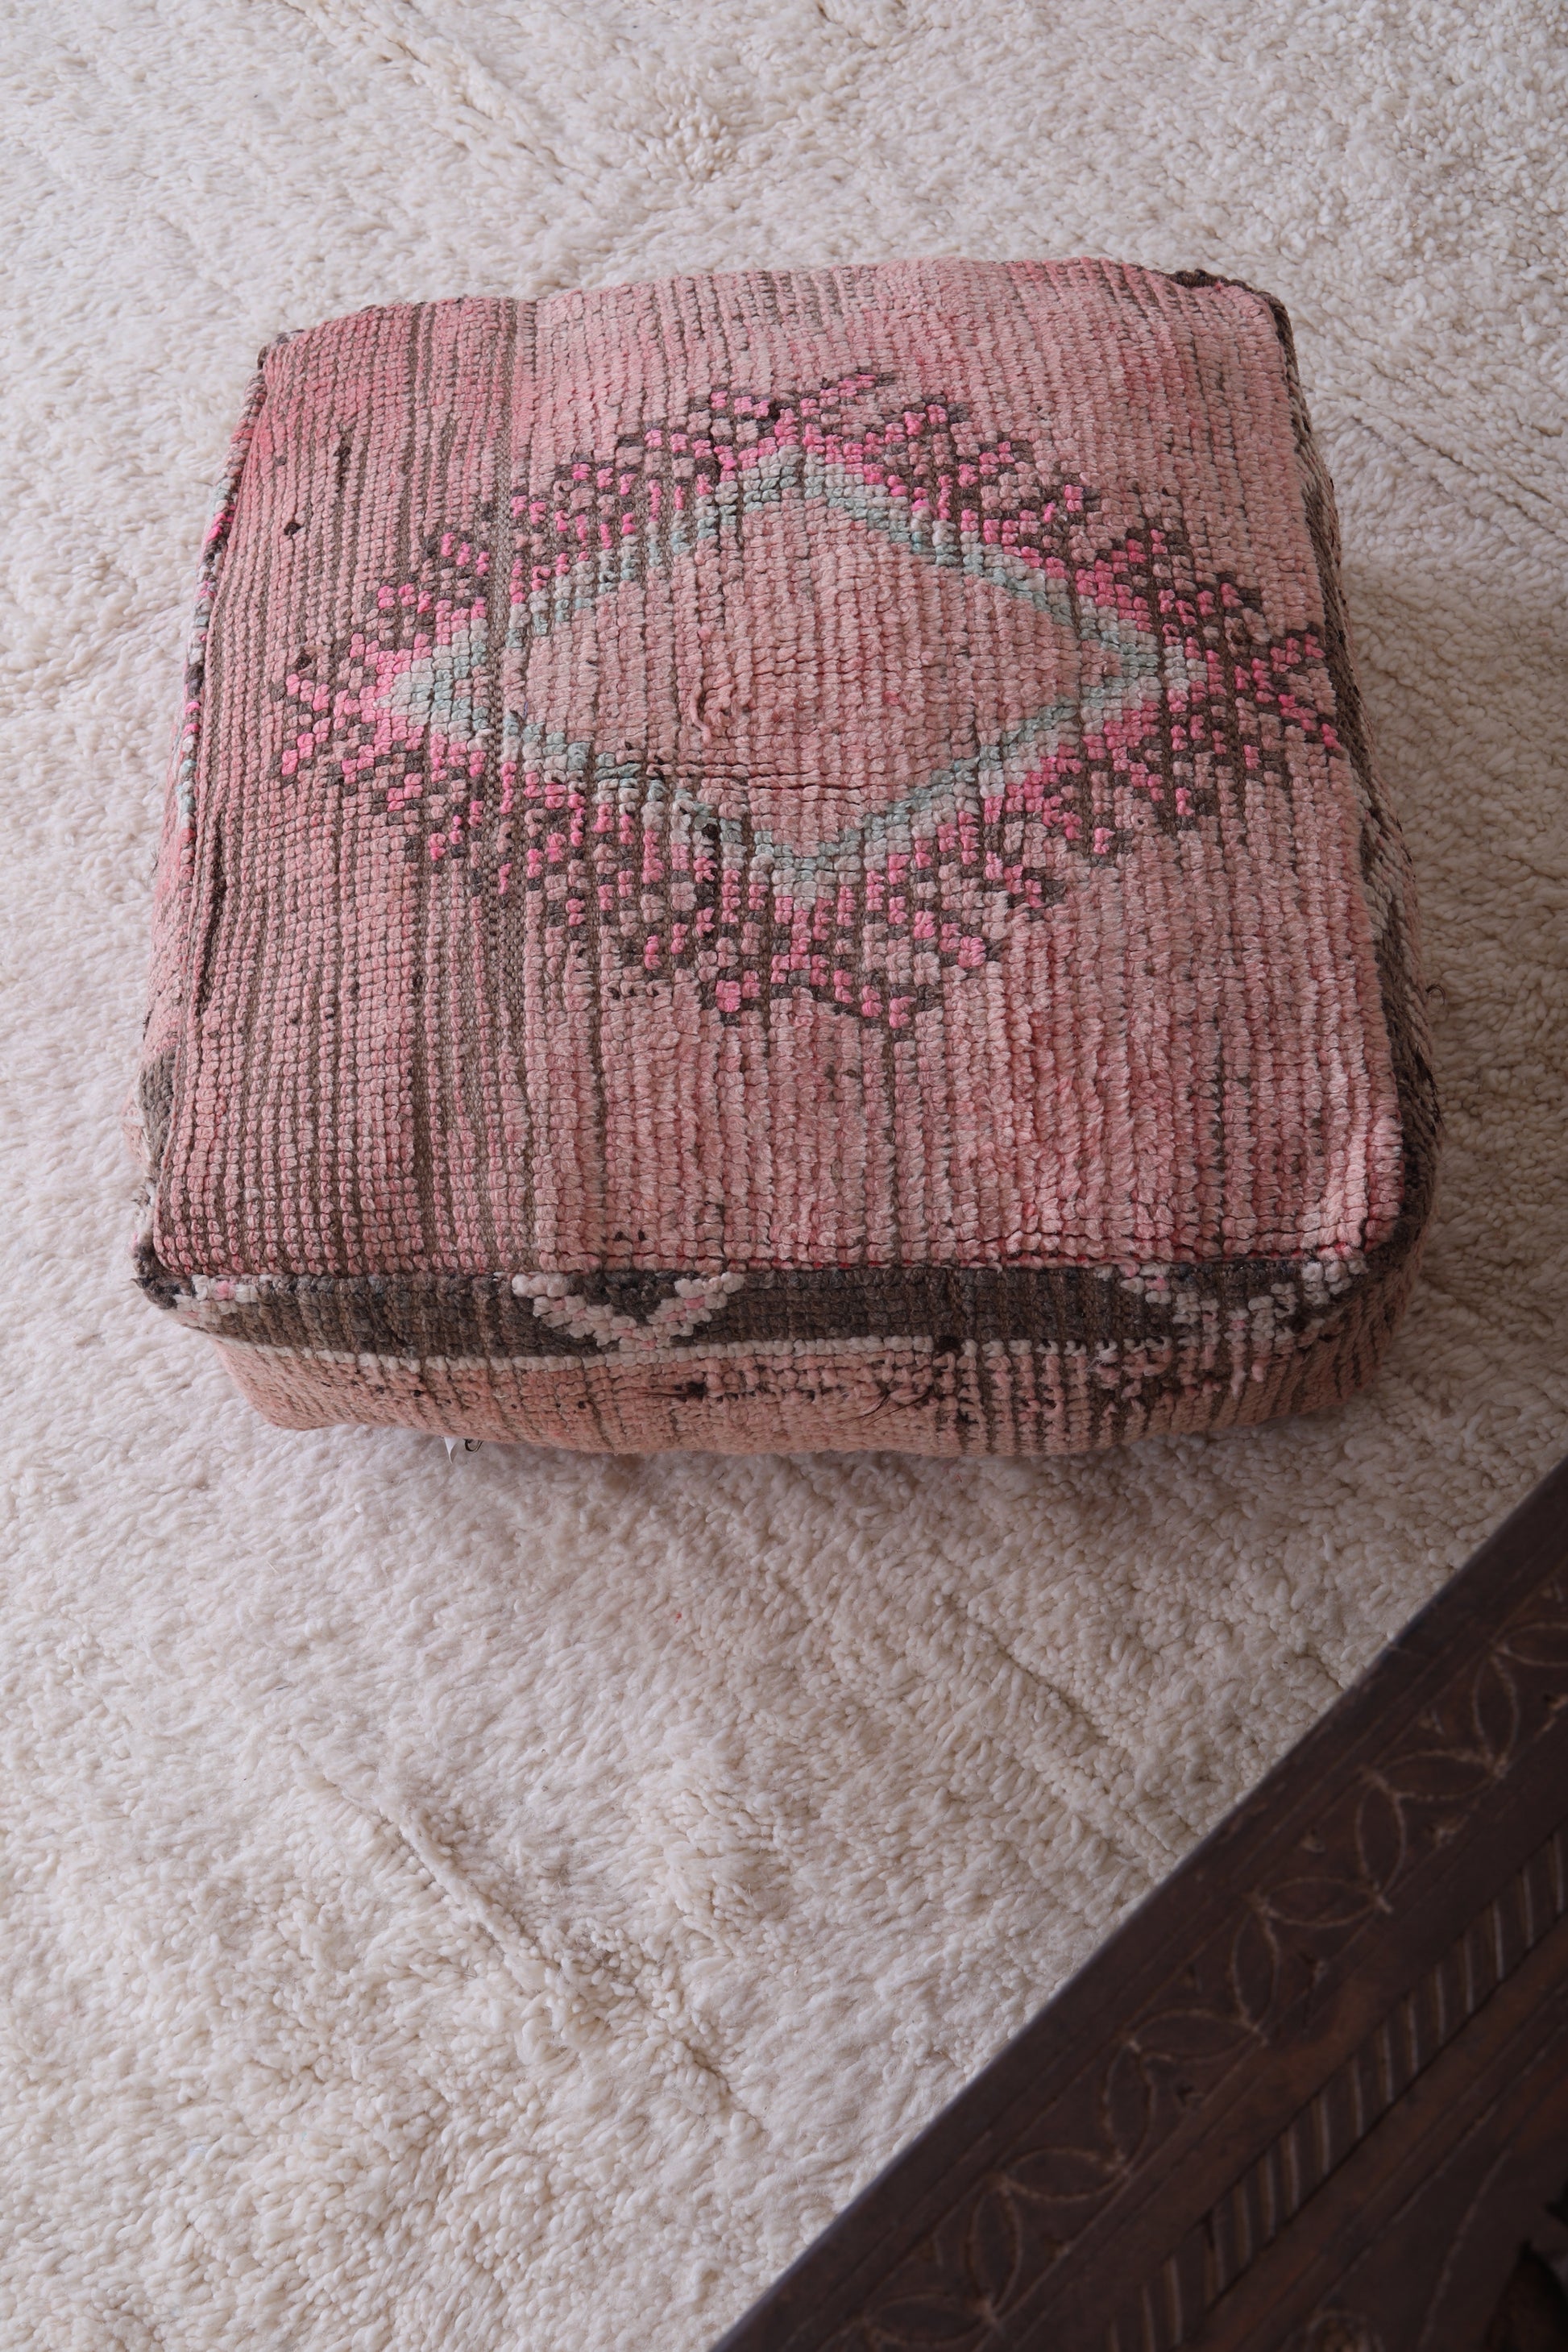 Moroccan handmade ottoman rug pouf